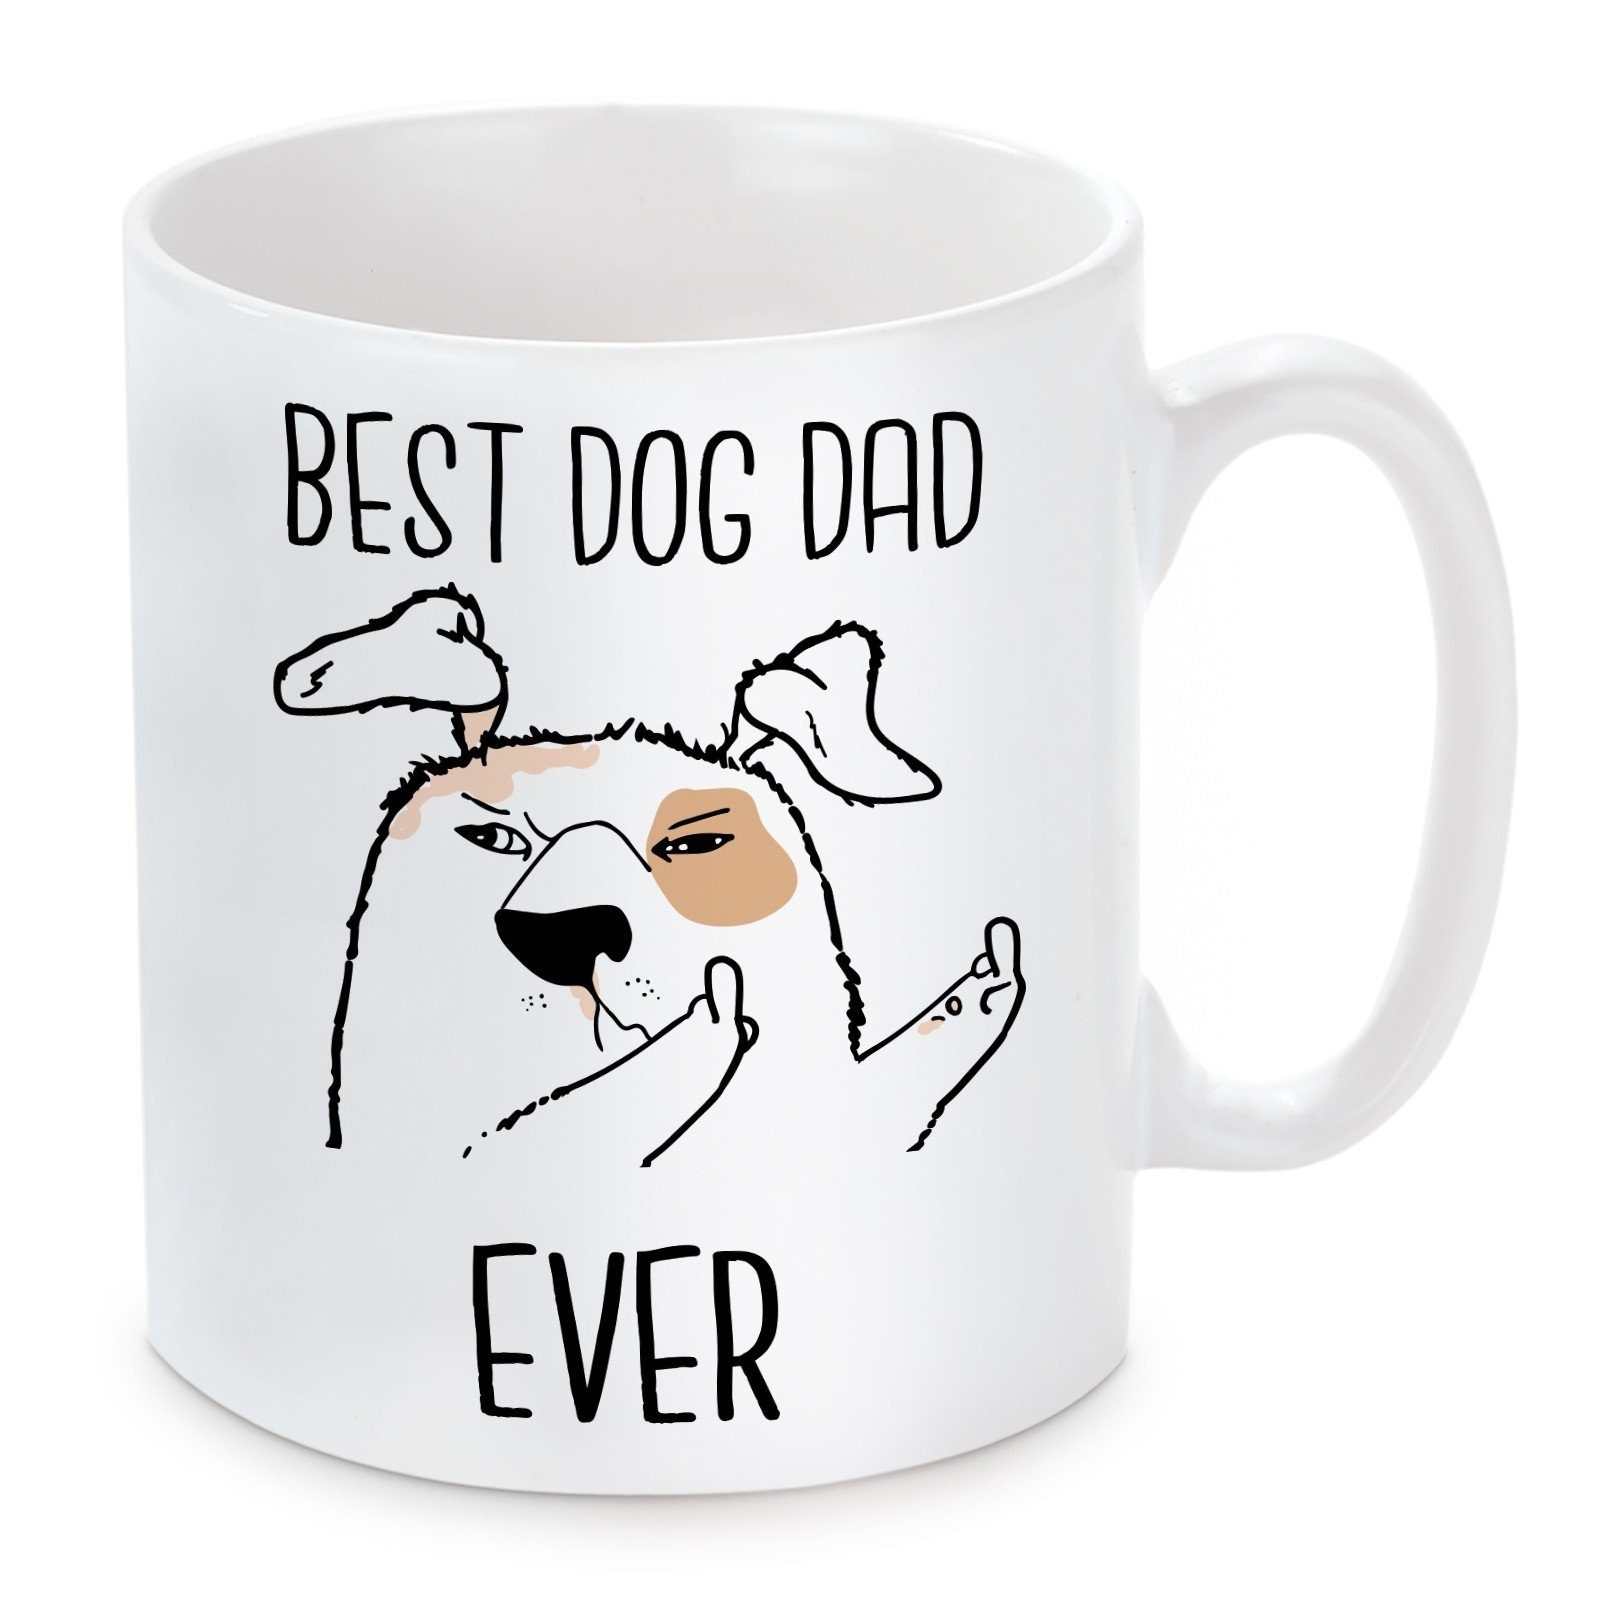 Herzbotschaft Tasse Kaffeebecher mit Motiv Dad Kaffeetasse Best Keramik, spülmaschinenfest mikrowellengeeignet und Dog Ever